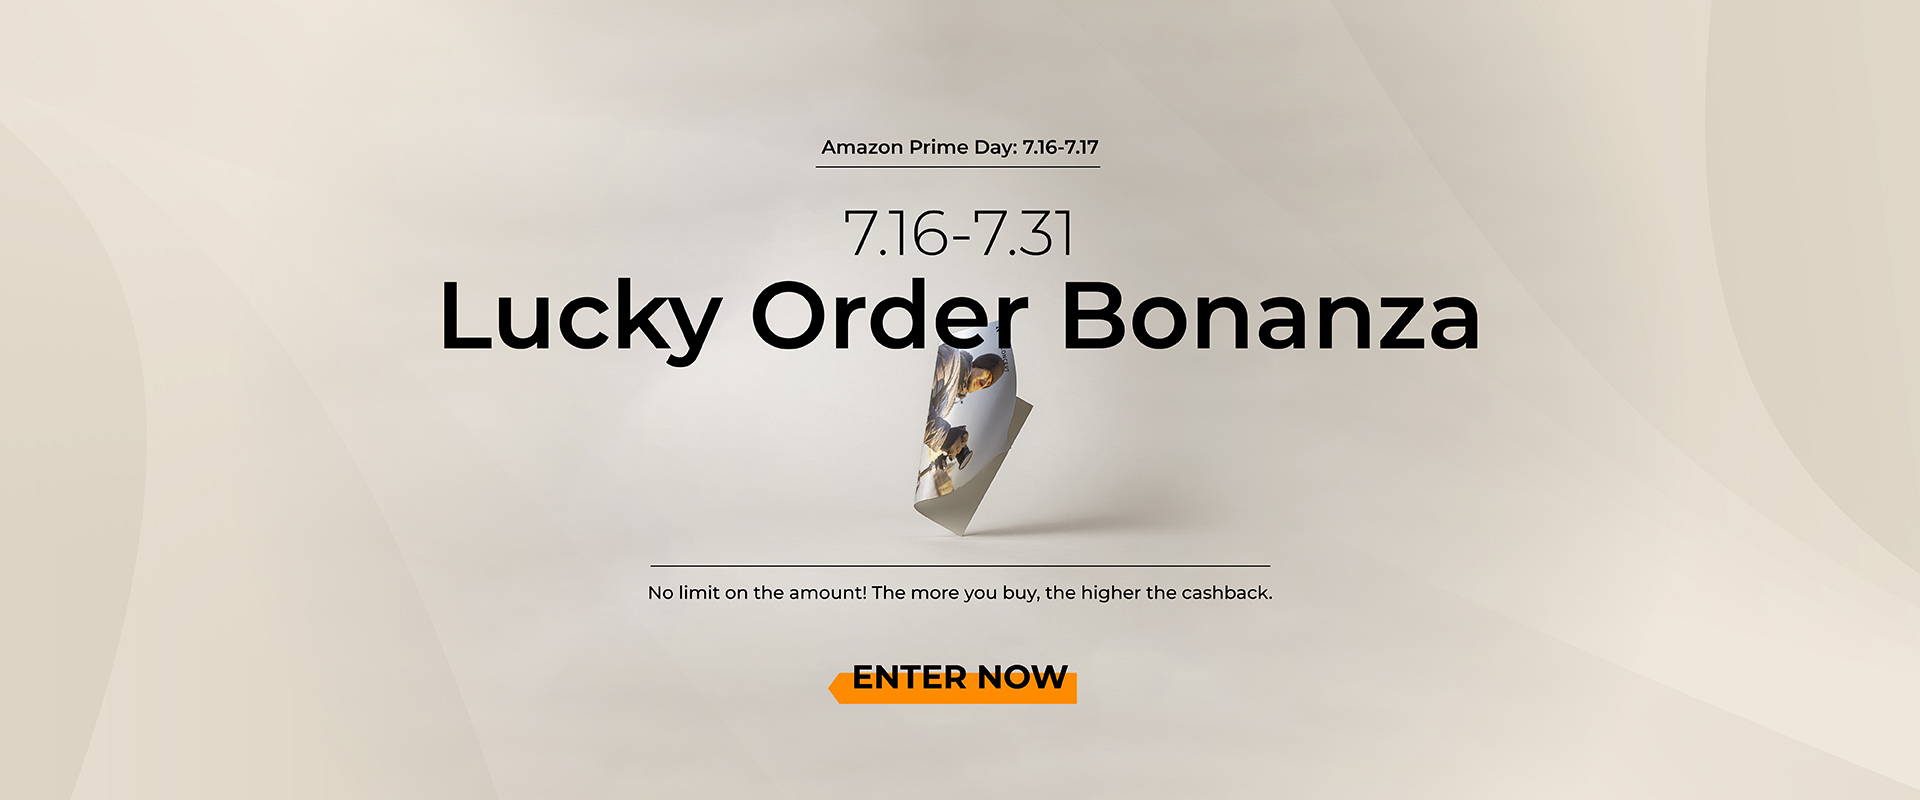 lucky-order-bonanza